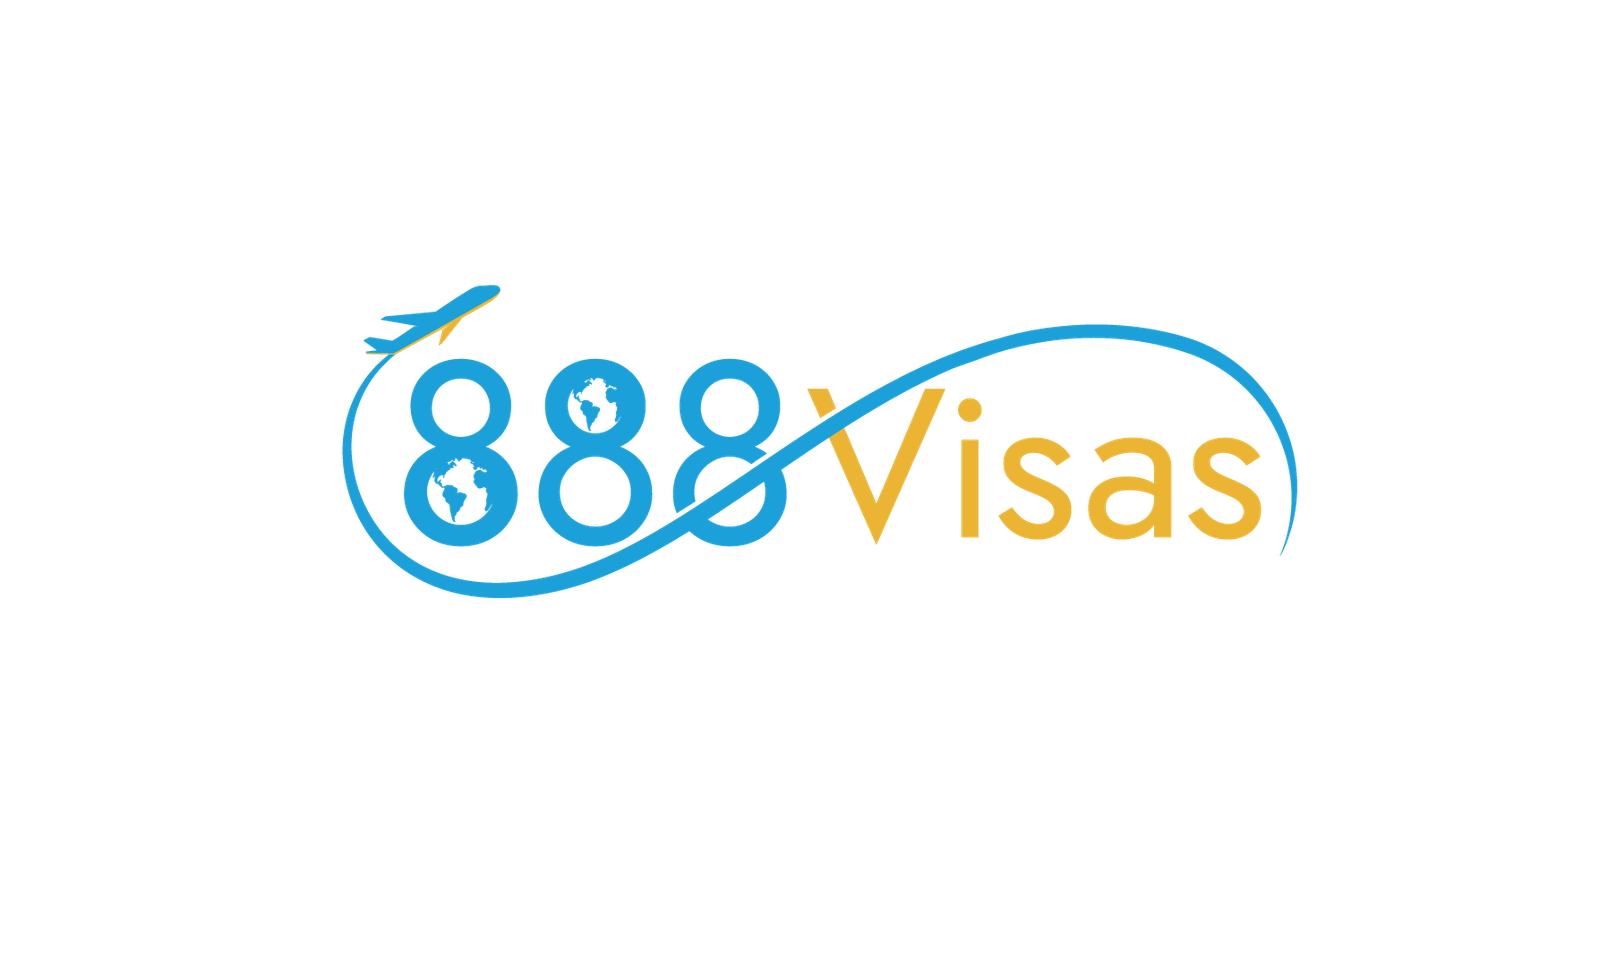 888 Visas